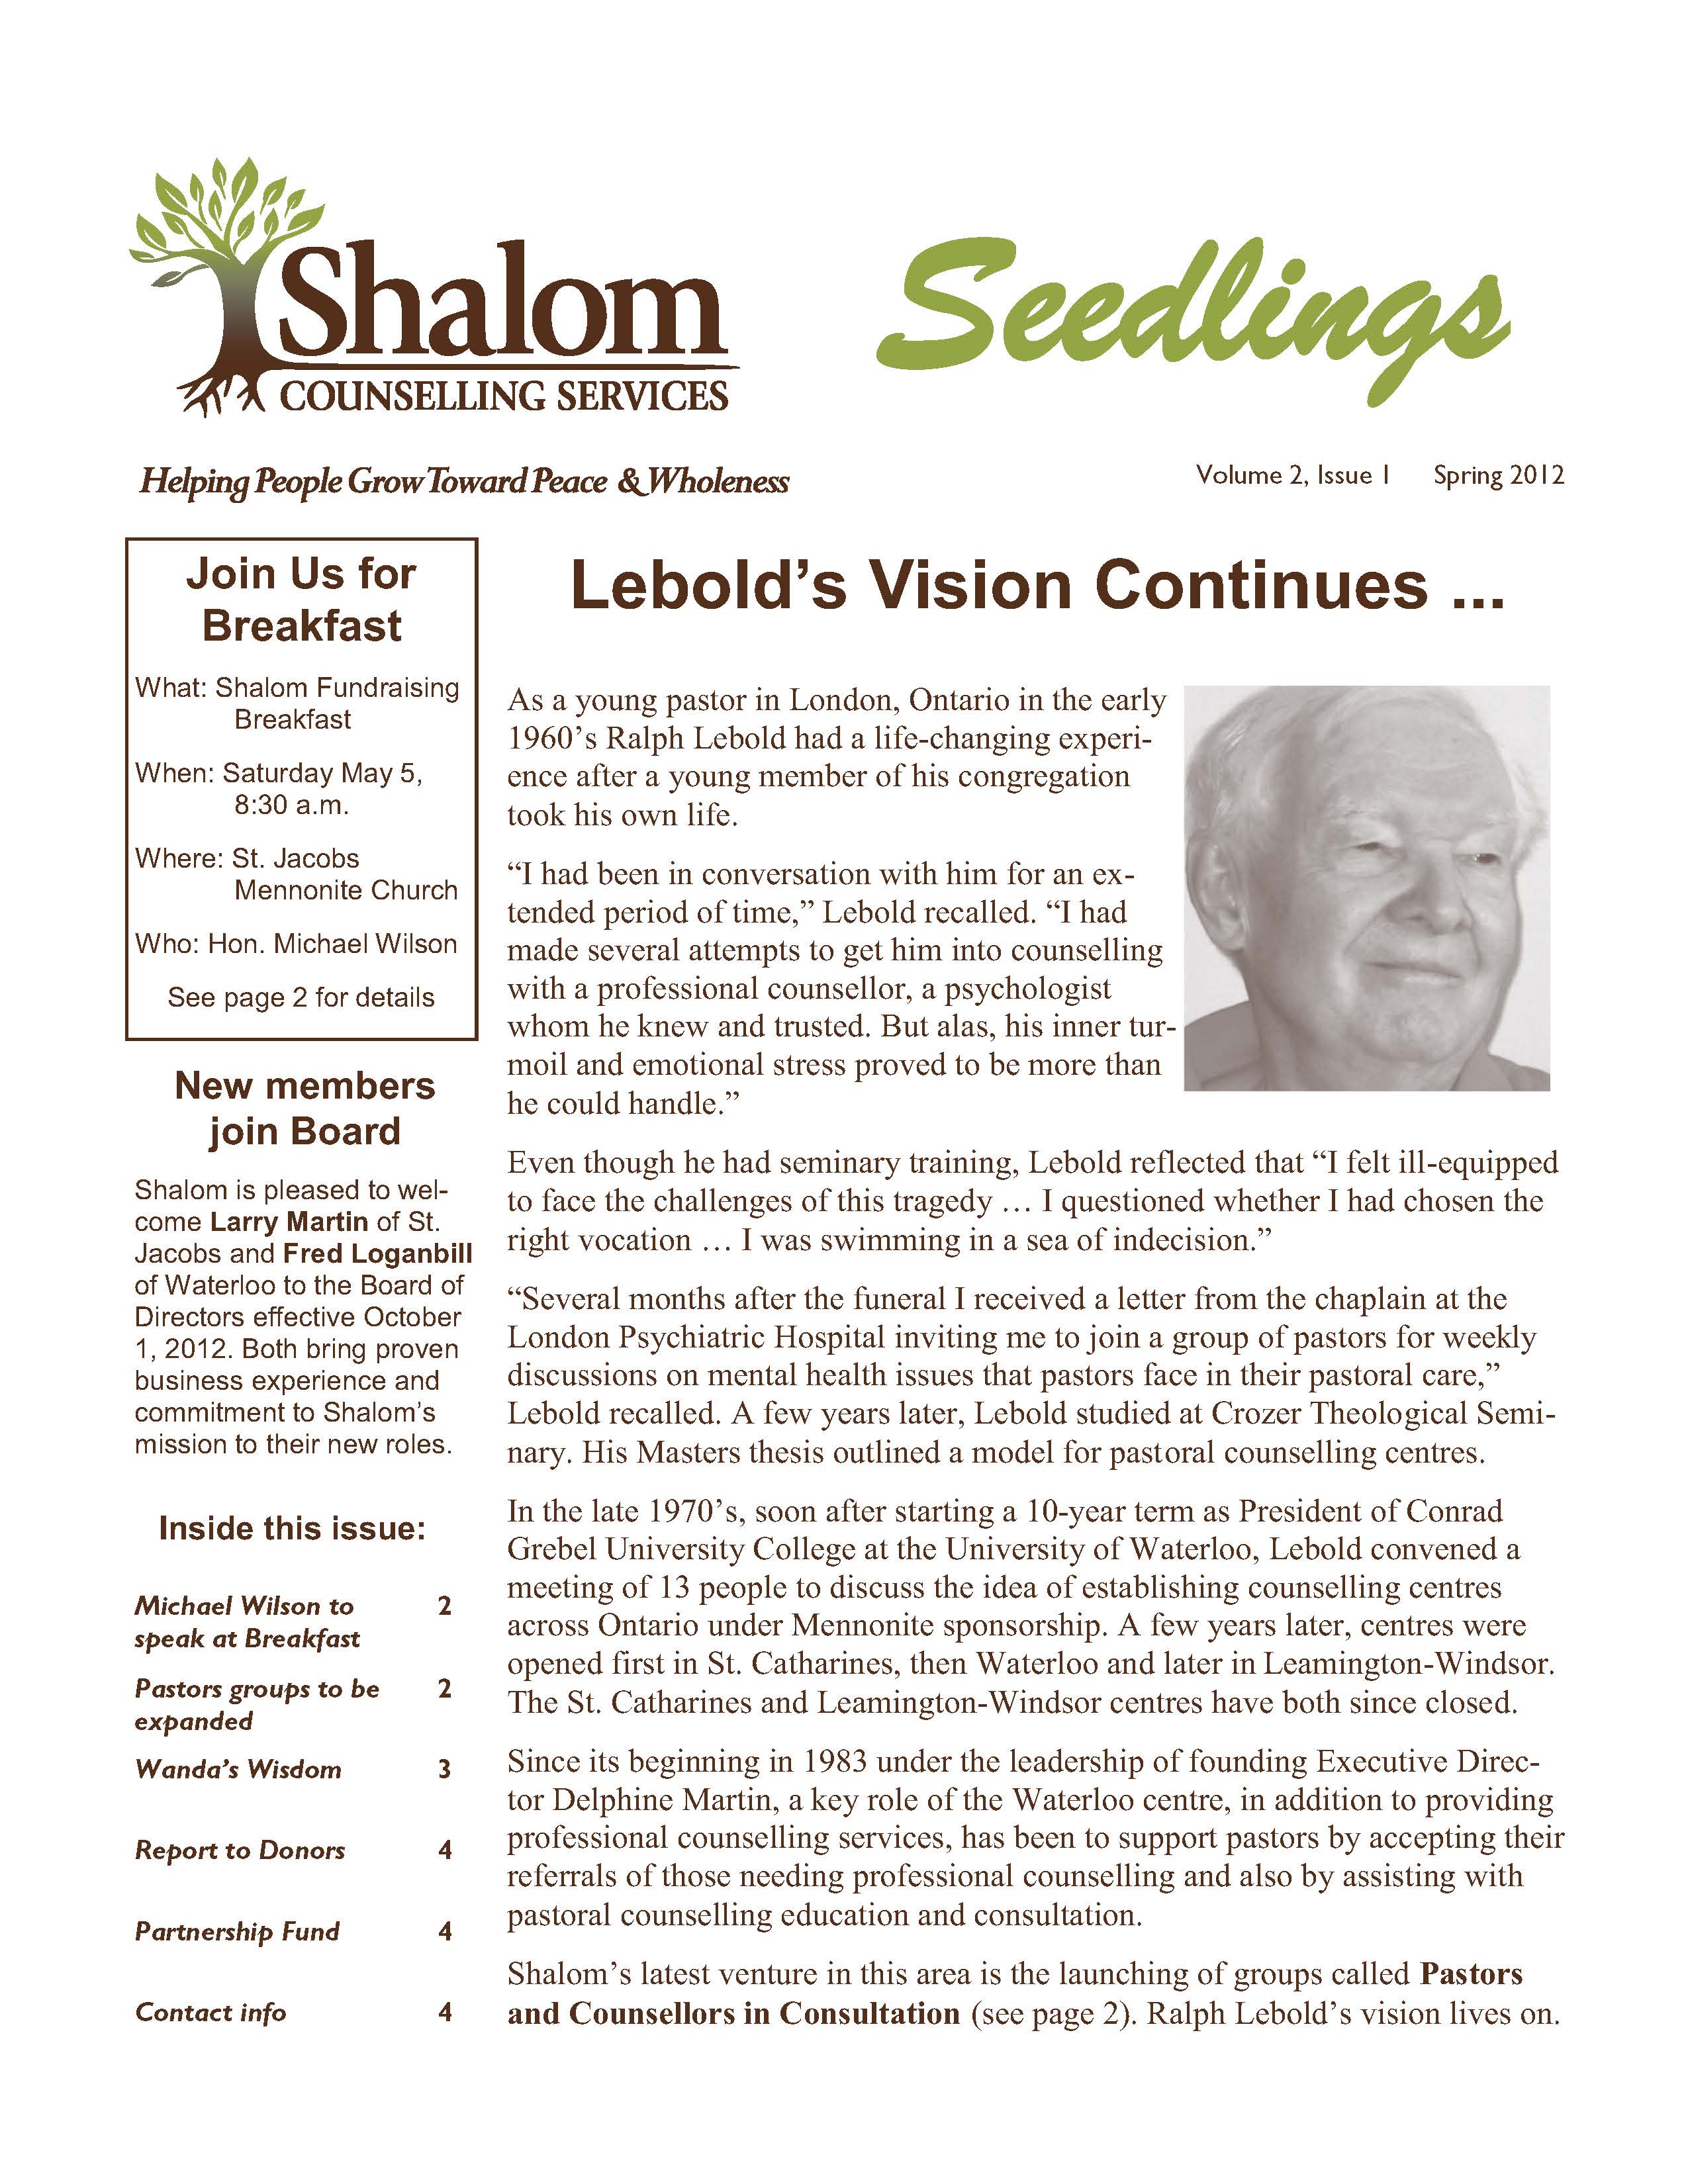 Spring 2012 Seedlings Newsletter